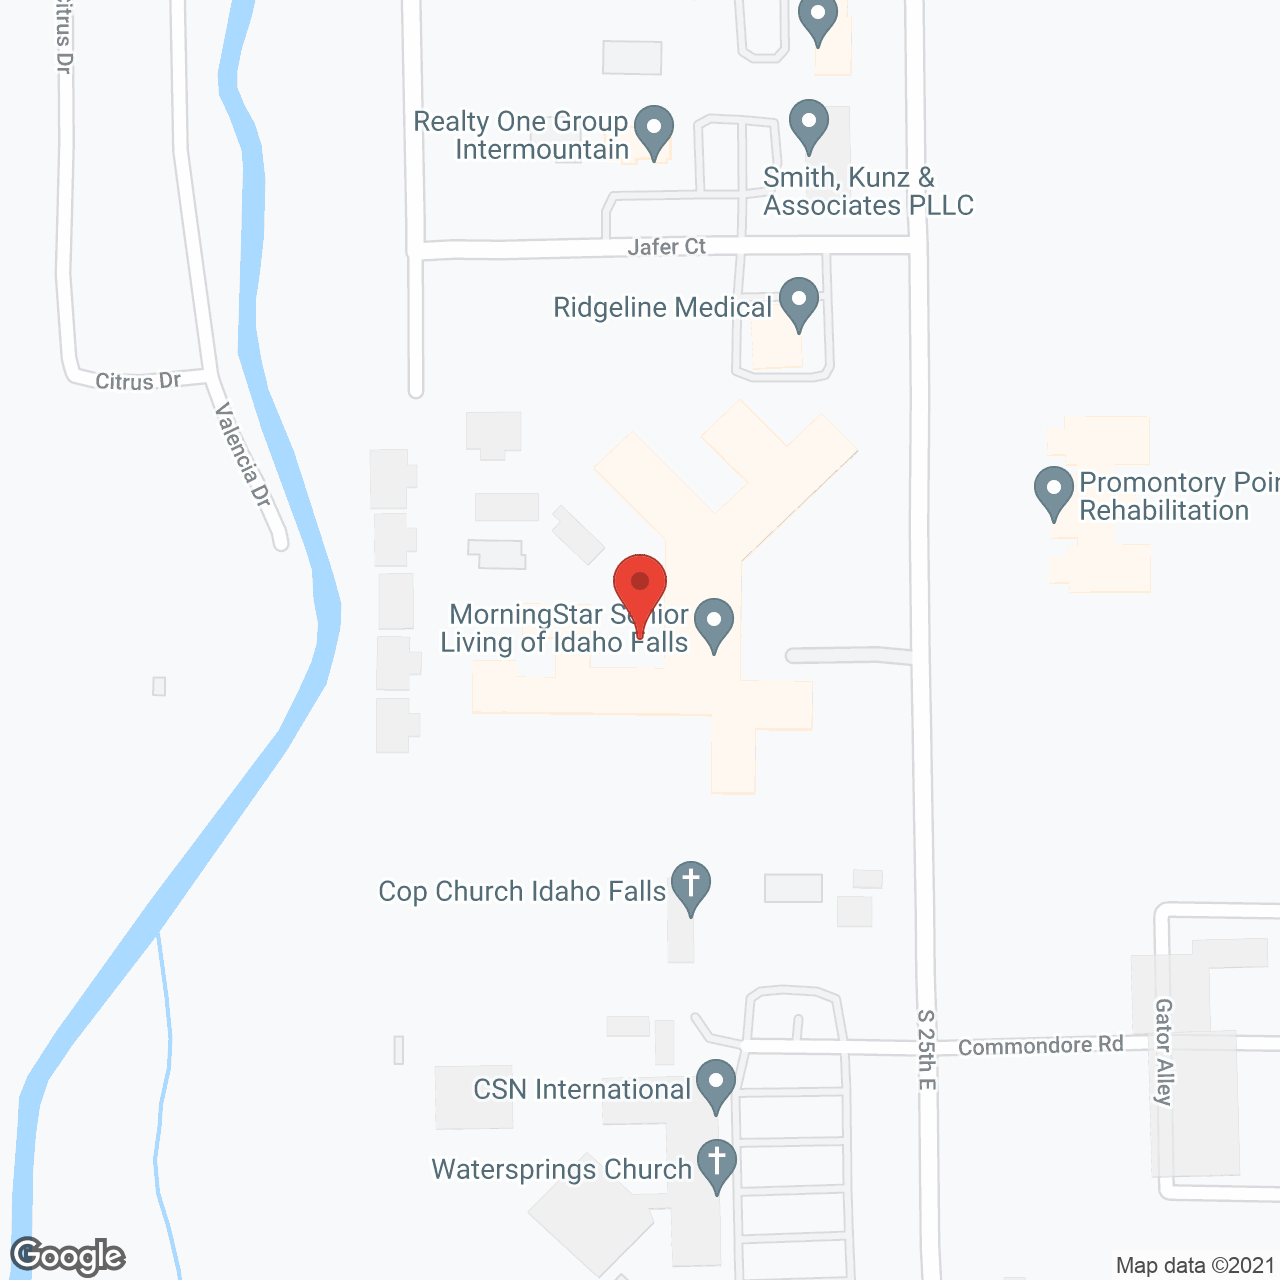 MorningStar Senior Living of Idaho Falls in google map